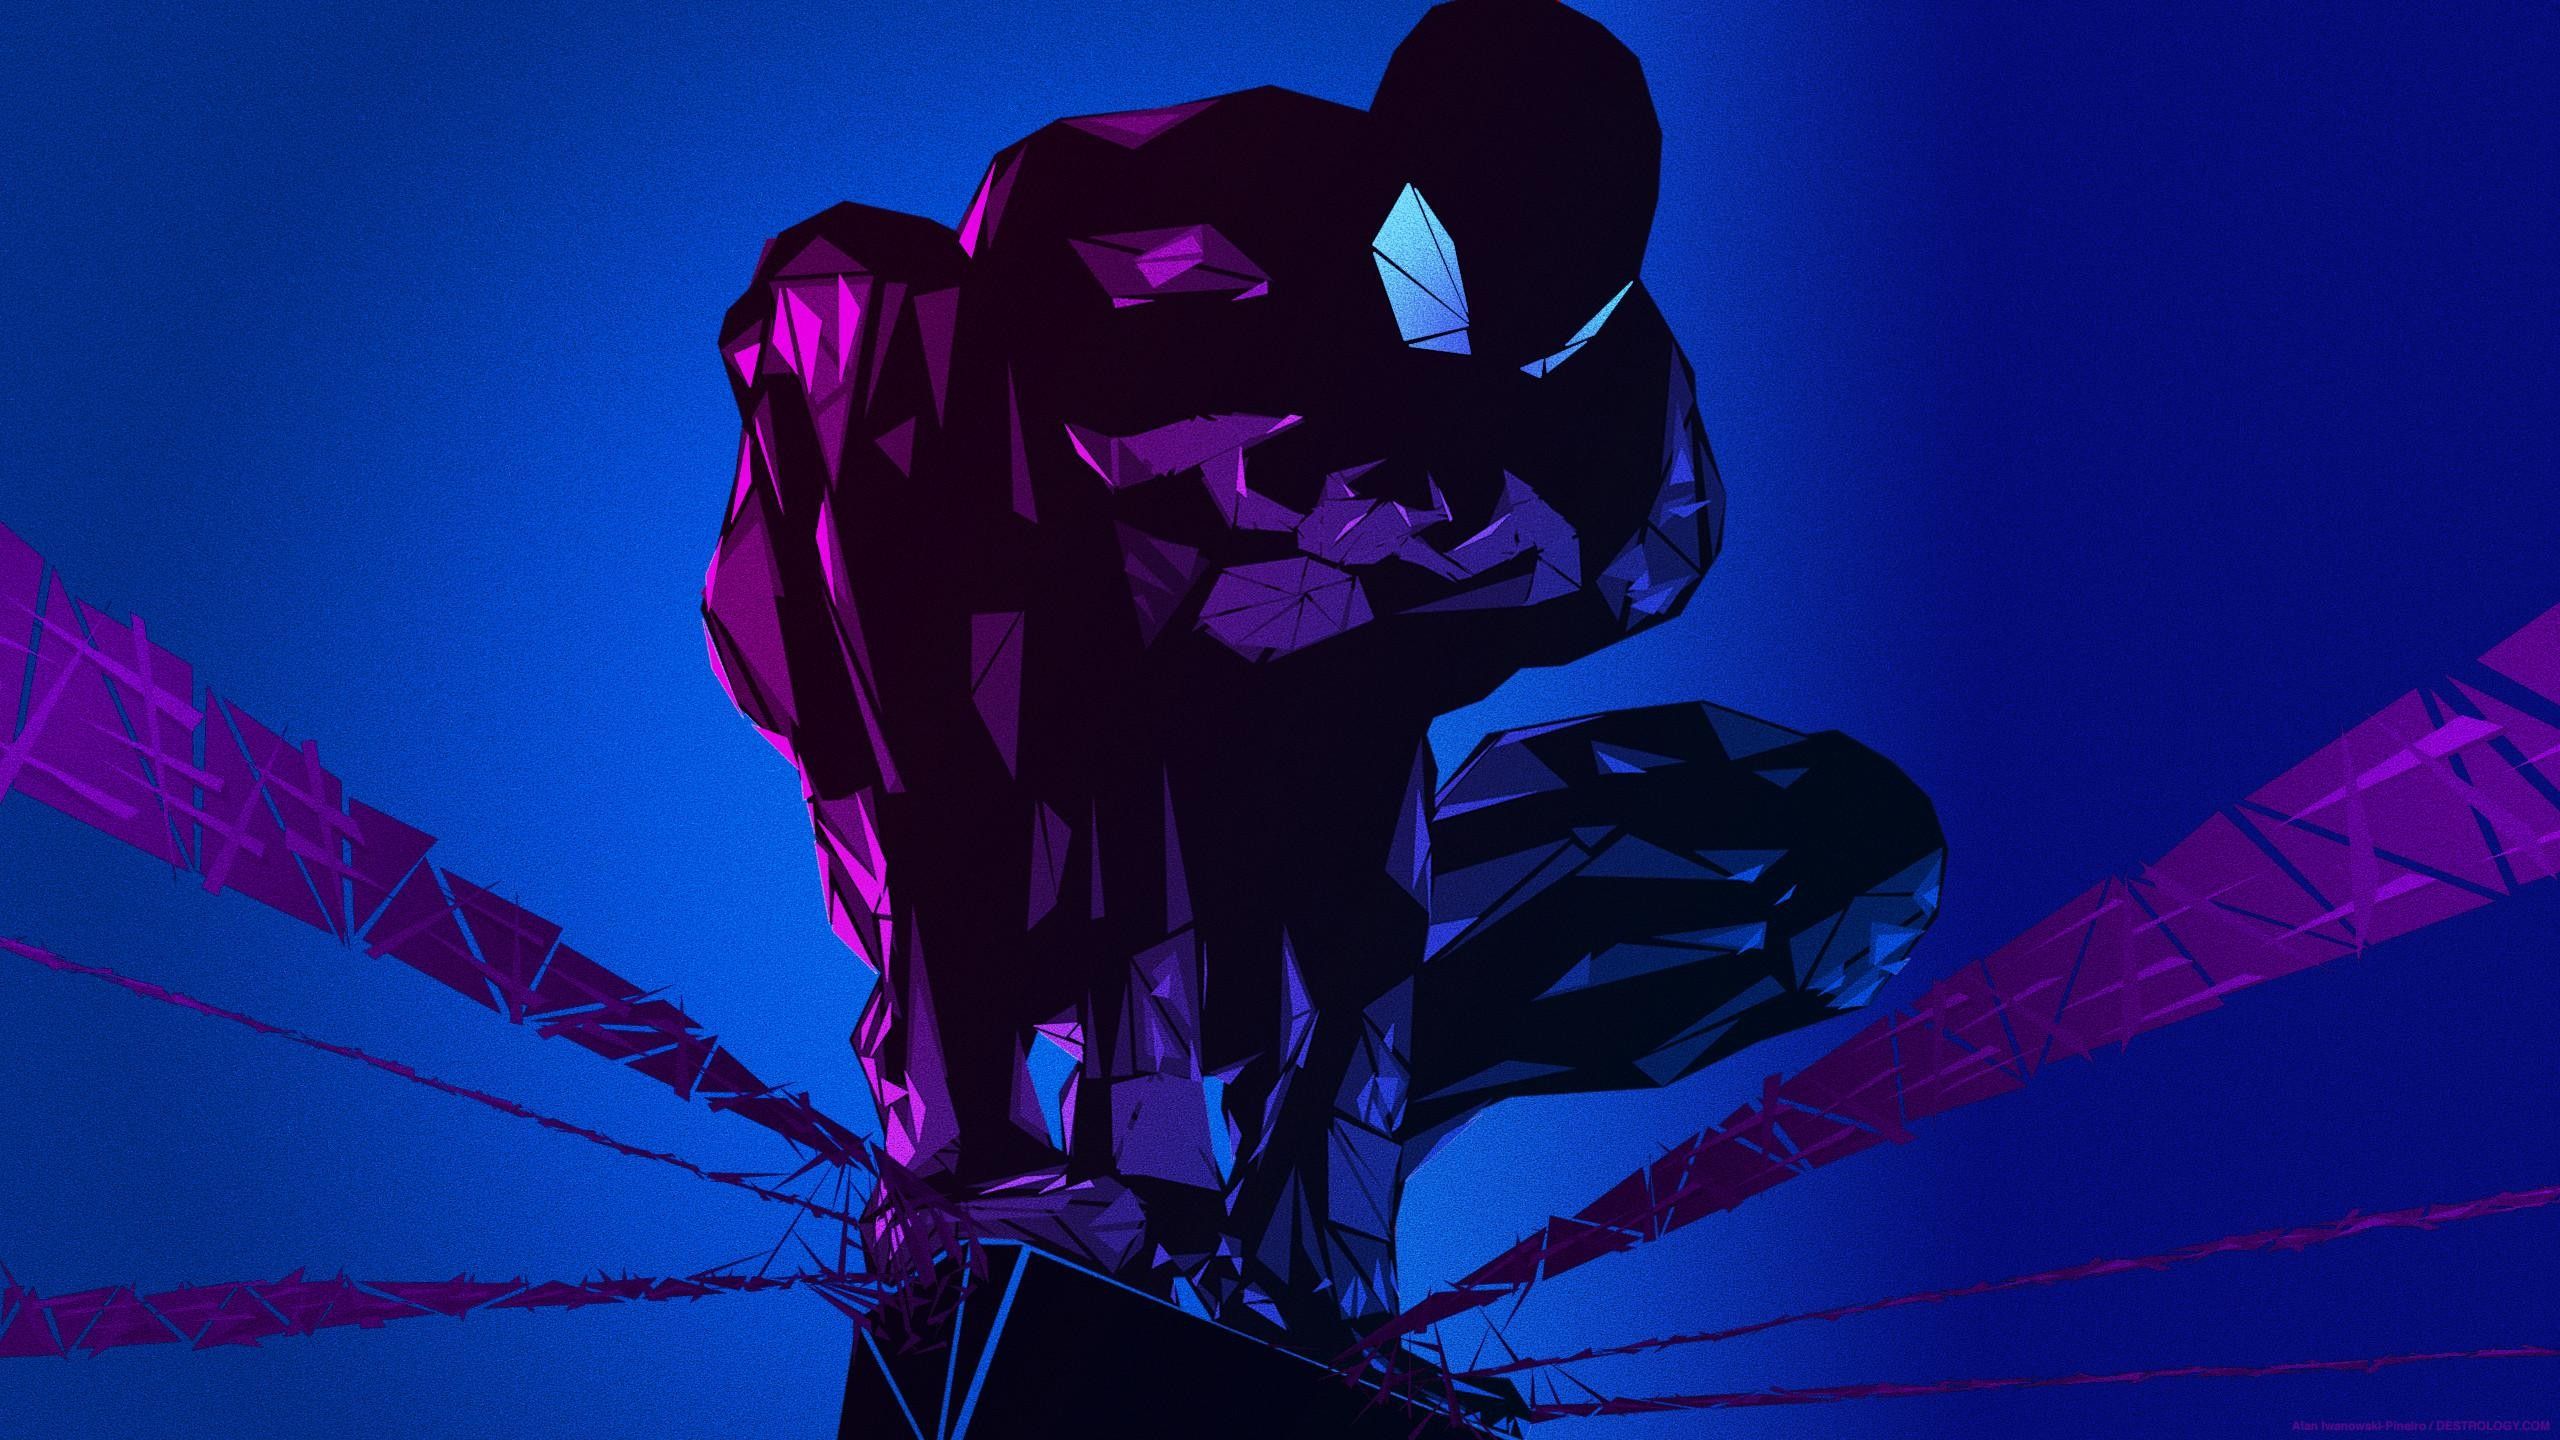 Wallpaper, illustration, blue, Marvel Comics, Spider Man, comics, darkness, screenshot, computer wallpaper 2560x1440